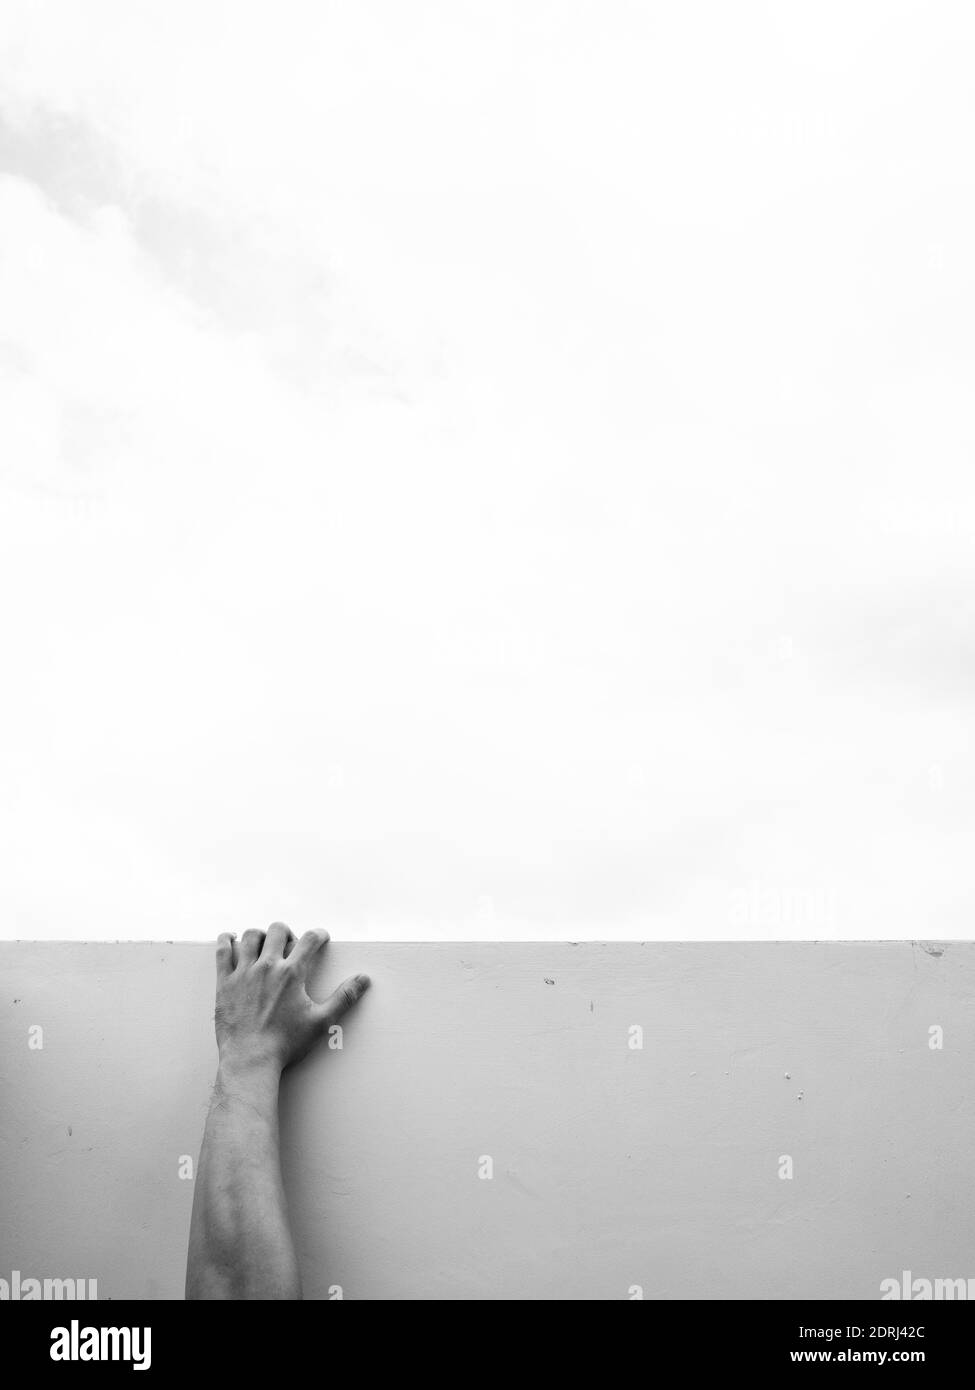 Mano humana sujetándose a la pared blanca contra un cielo gris que seña las luchas de la vida y colgando encendido Foto de stock